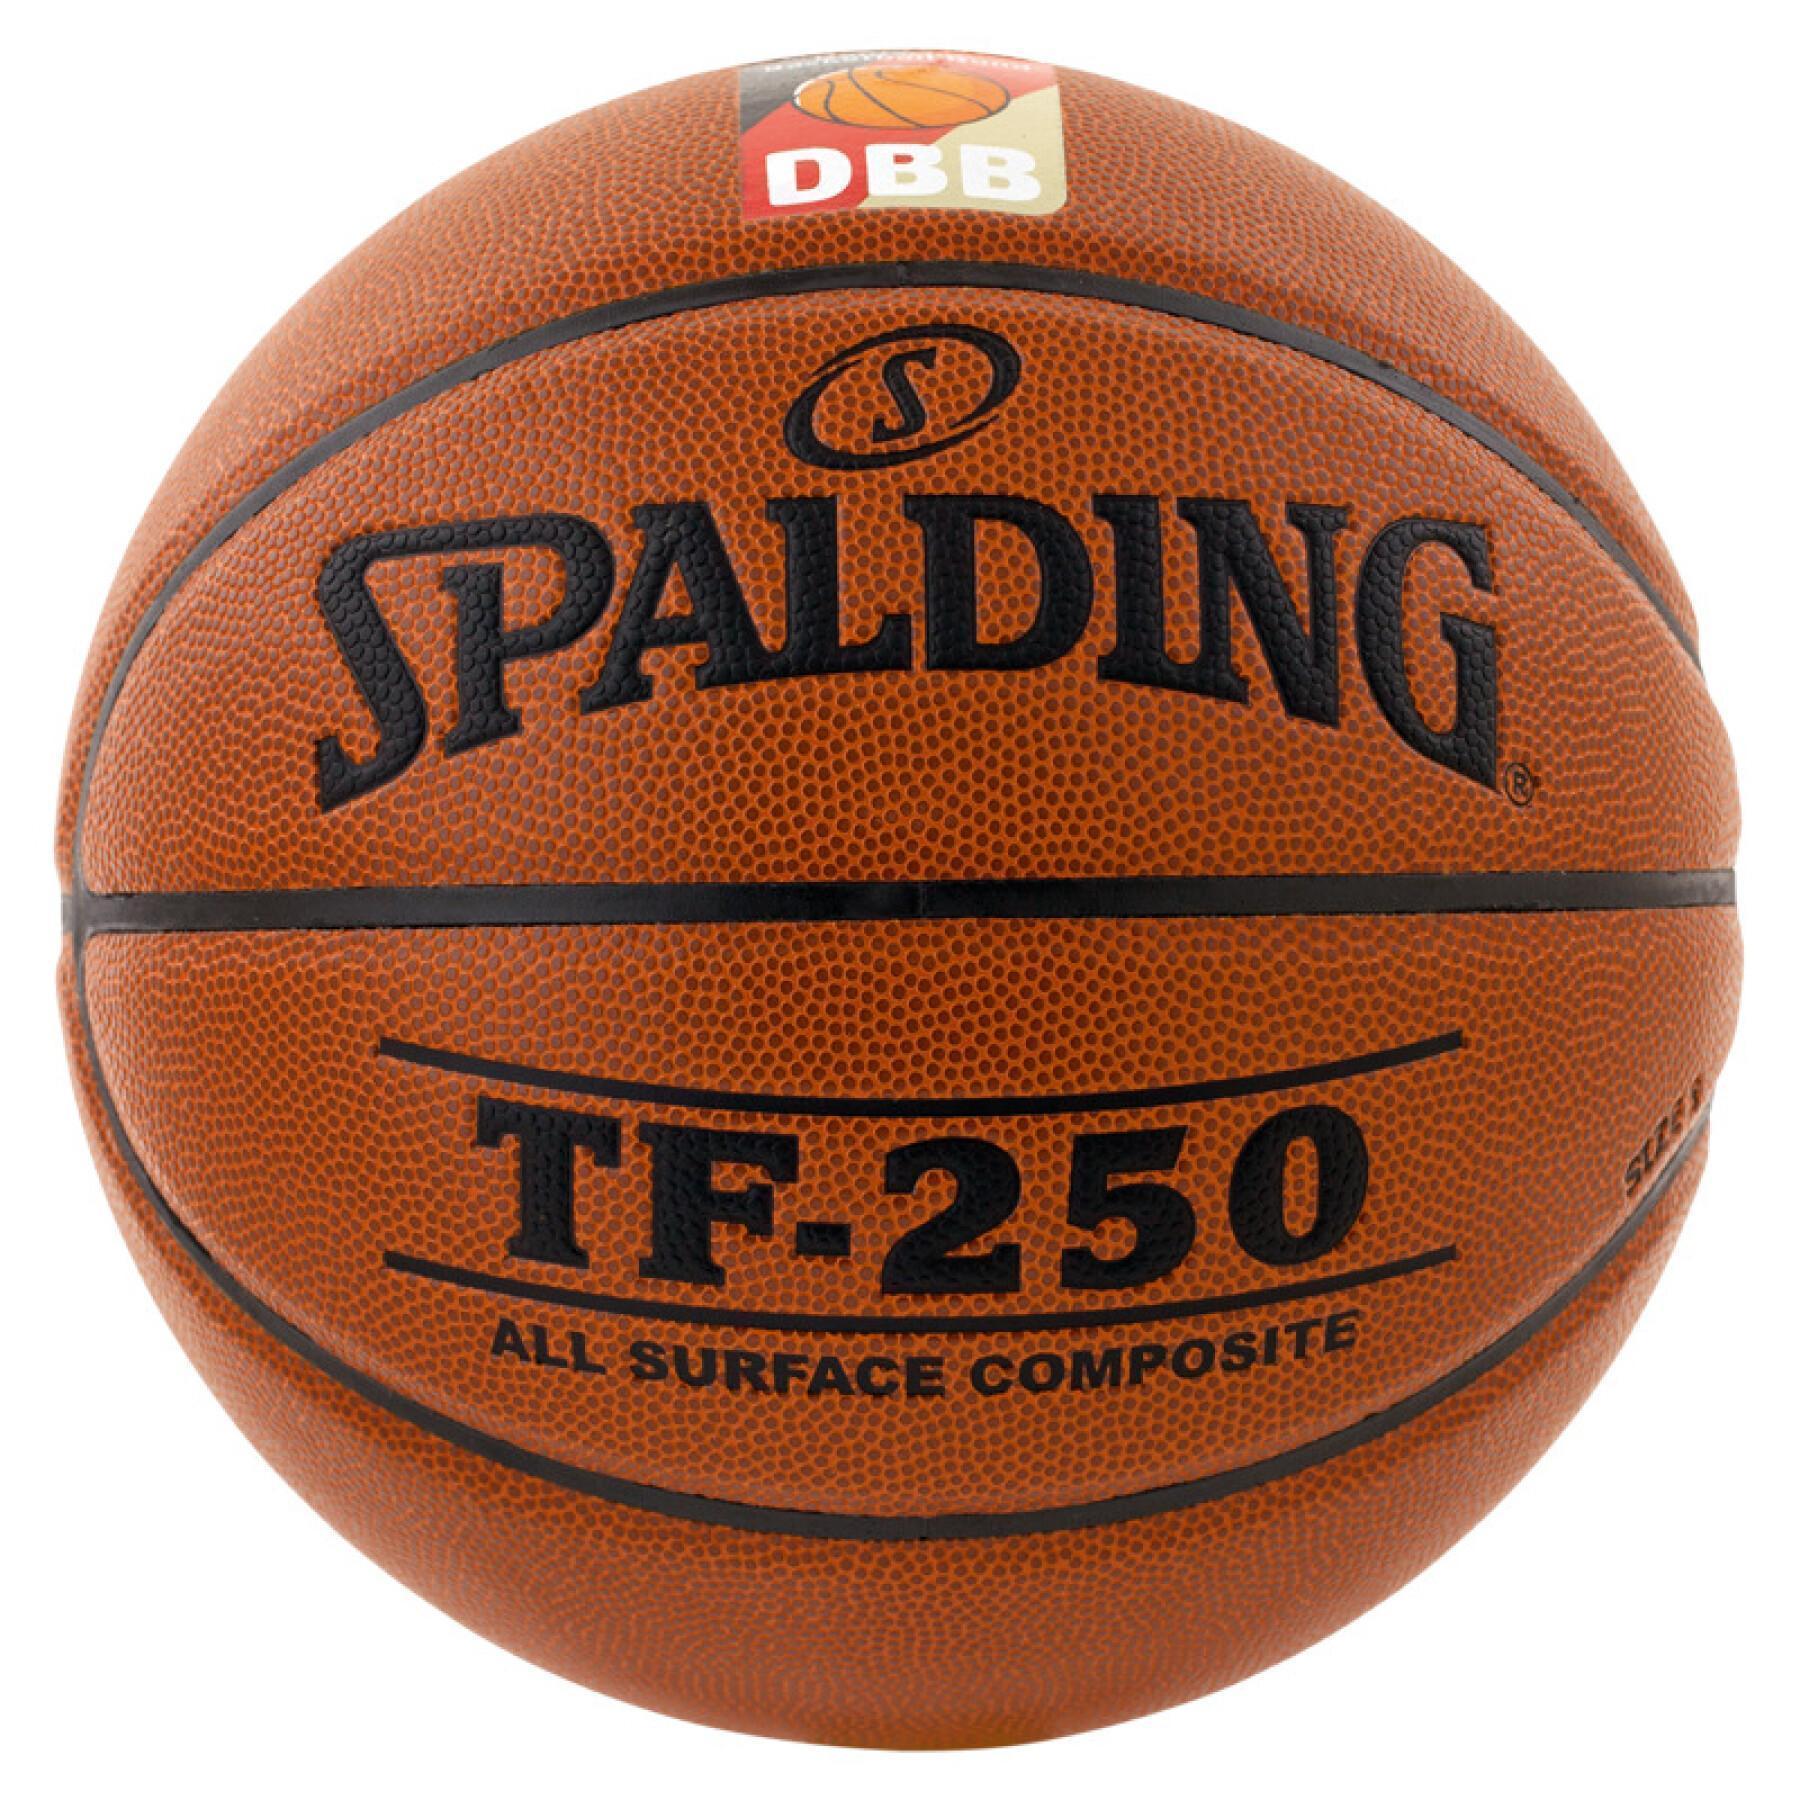 Balloon Spalding DBB Tf250 (74-594z)